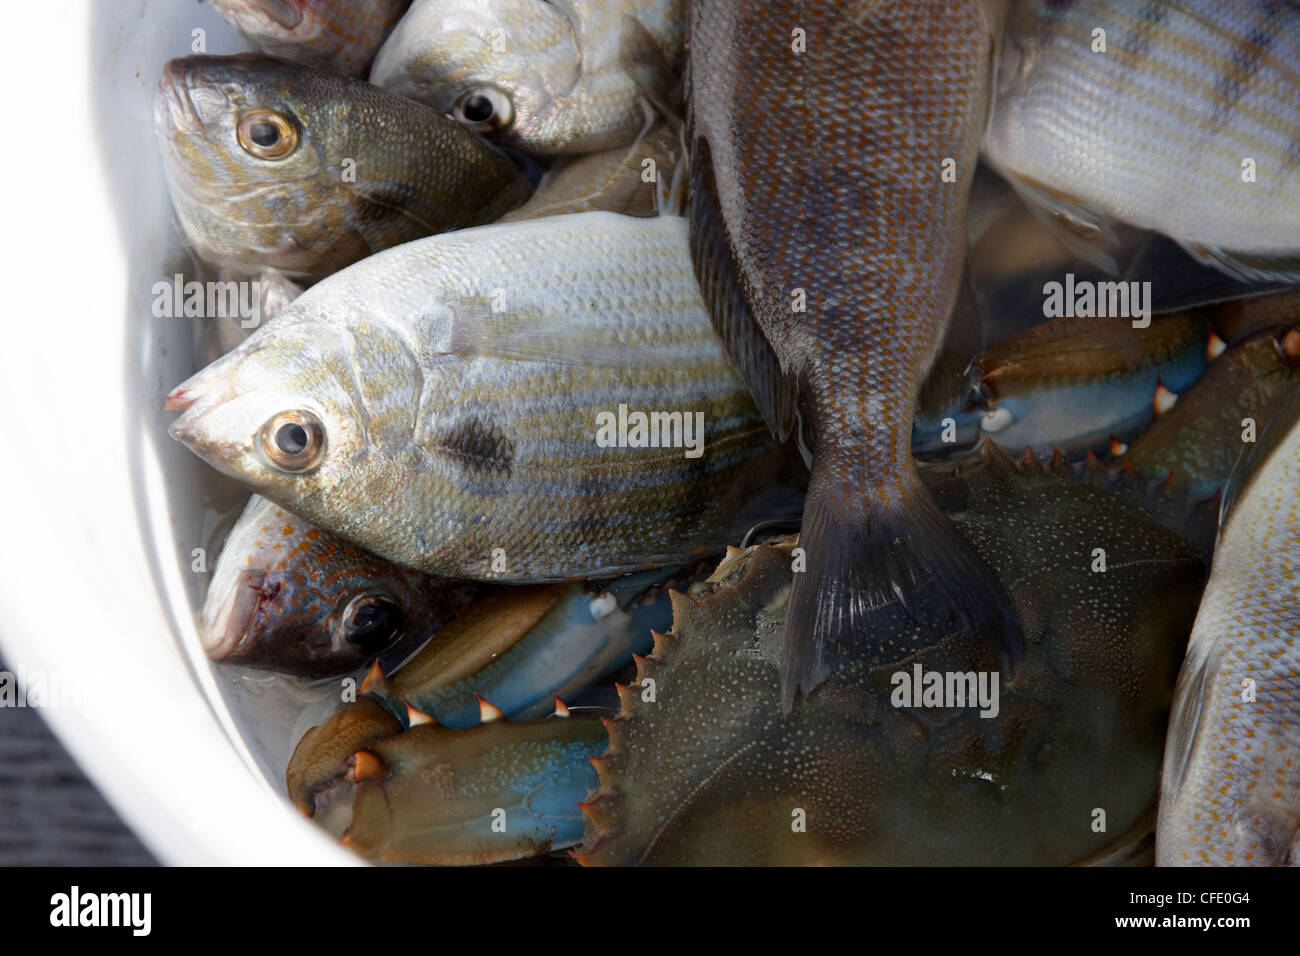 Un seau plein de poissons qu'un pêcheur mans' catch Banque D'Images